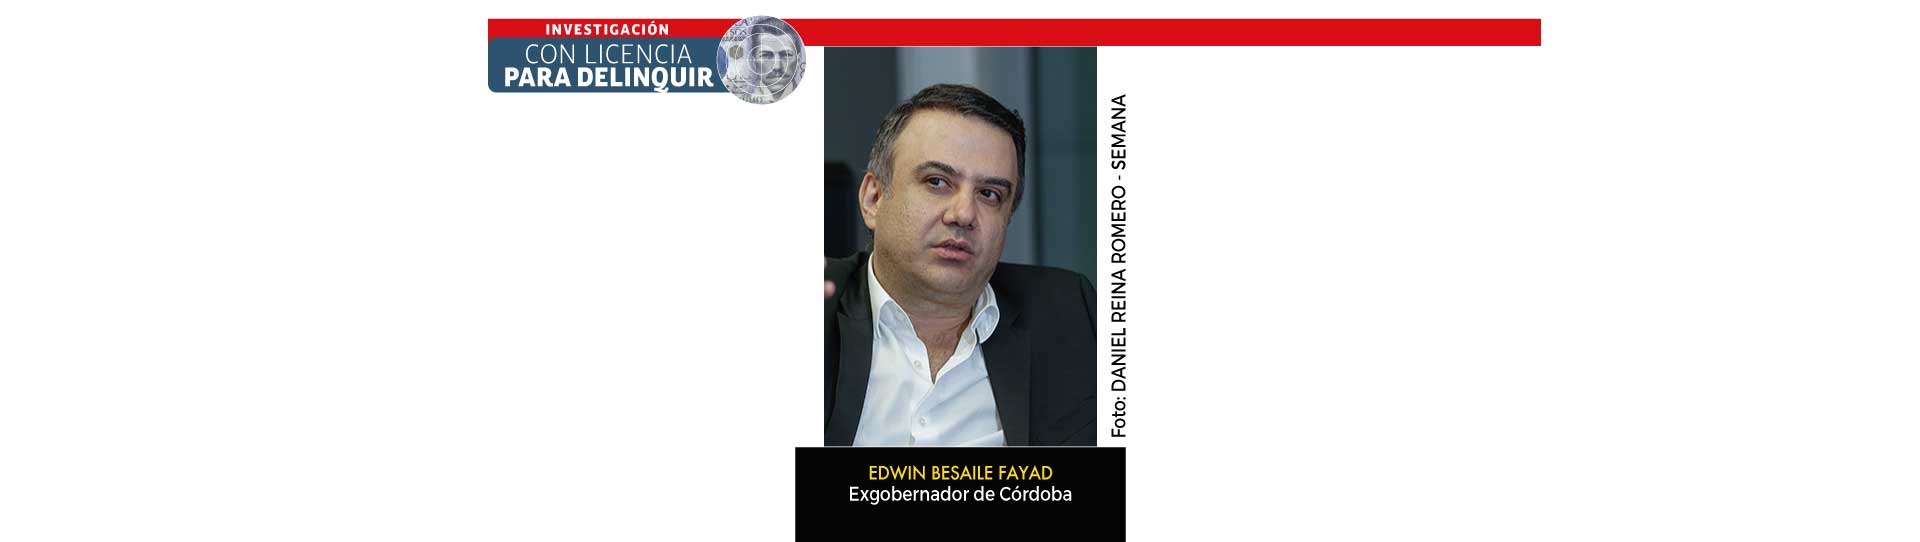 En Córdoba: corrupción local y nacional
